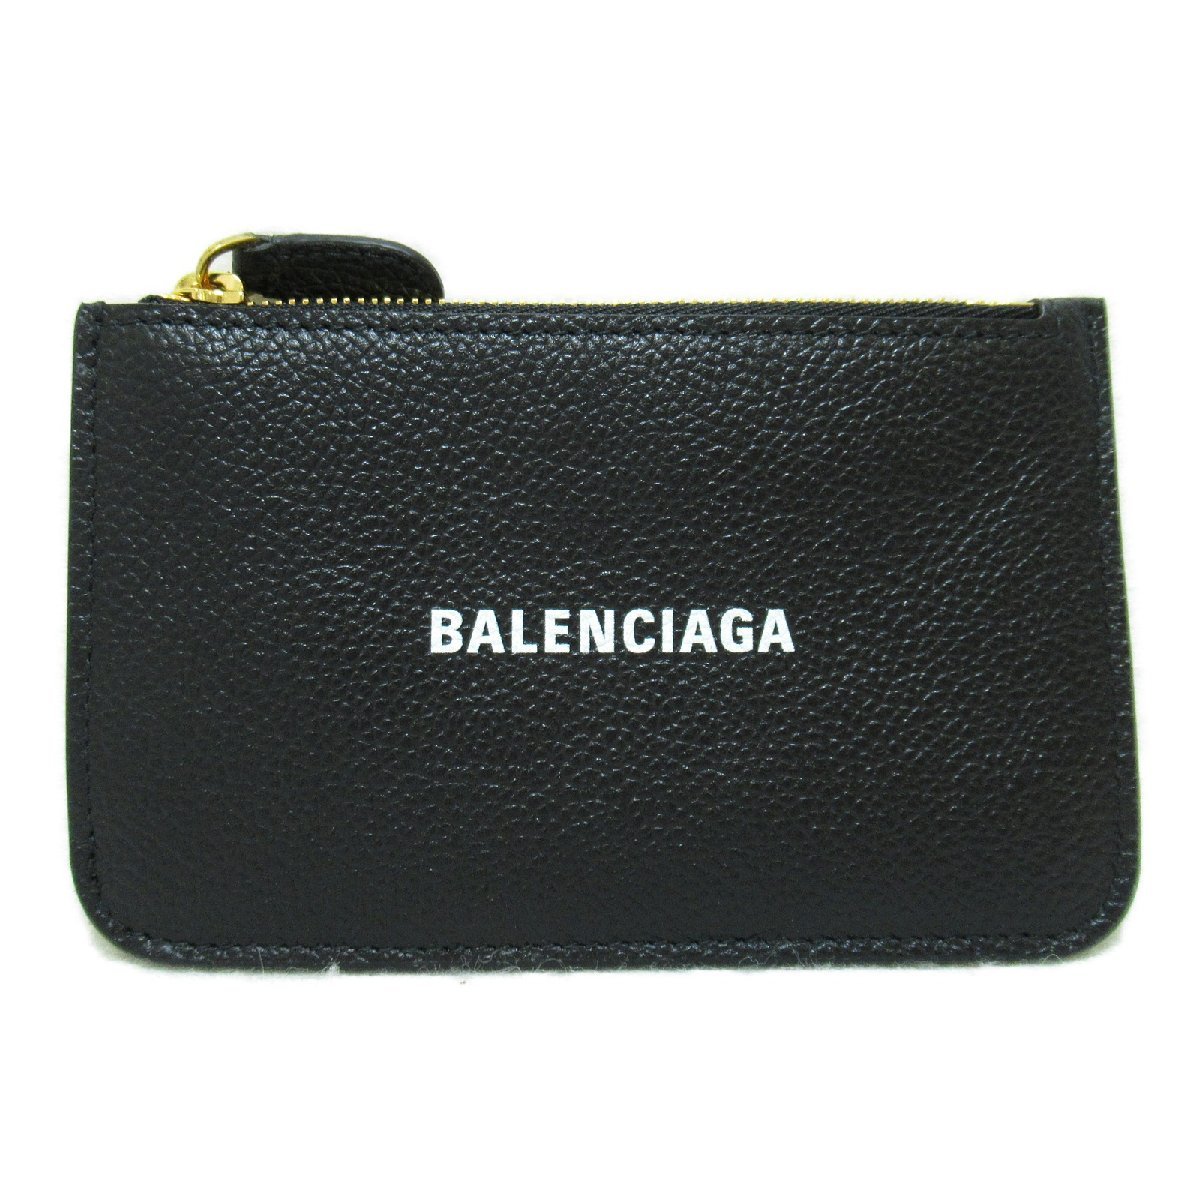 BALENCIAGA バレンシアガ カードケース カードケース&キーポーチ ブラック系 カーフ（牛革） ユニセックス